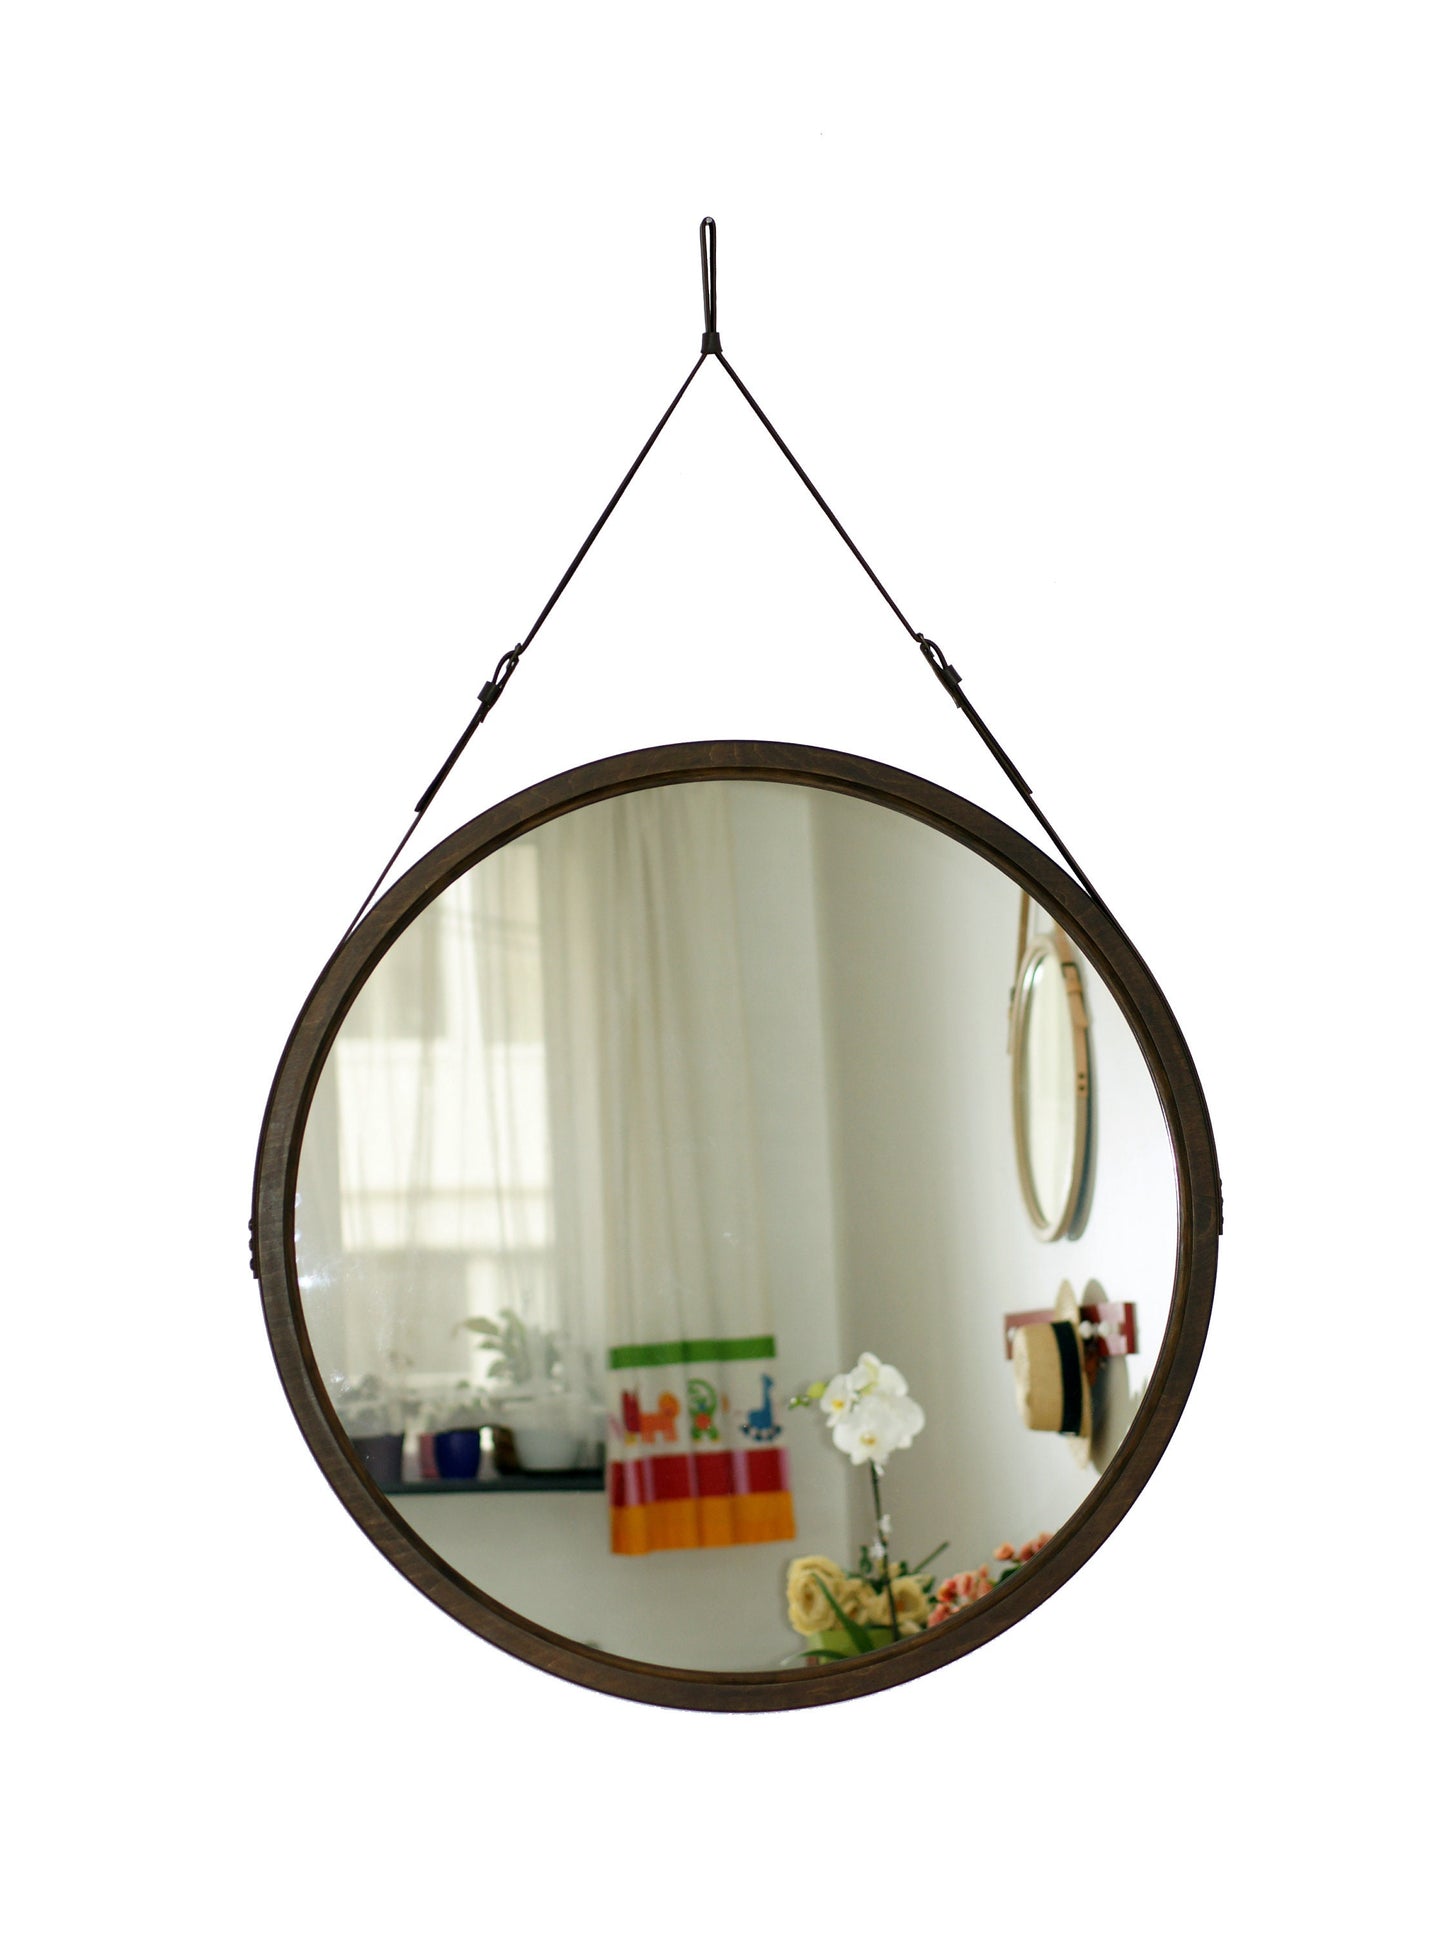 Дерев'яне дзеркало для ванної кімнати для декору стін, Дзеркало в фермерському будинку з дерева, Шкіряне дзеркало, Декоративне дзеркало, Велике настінне дзеркало, Сучасне дзеркало